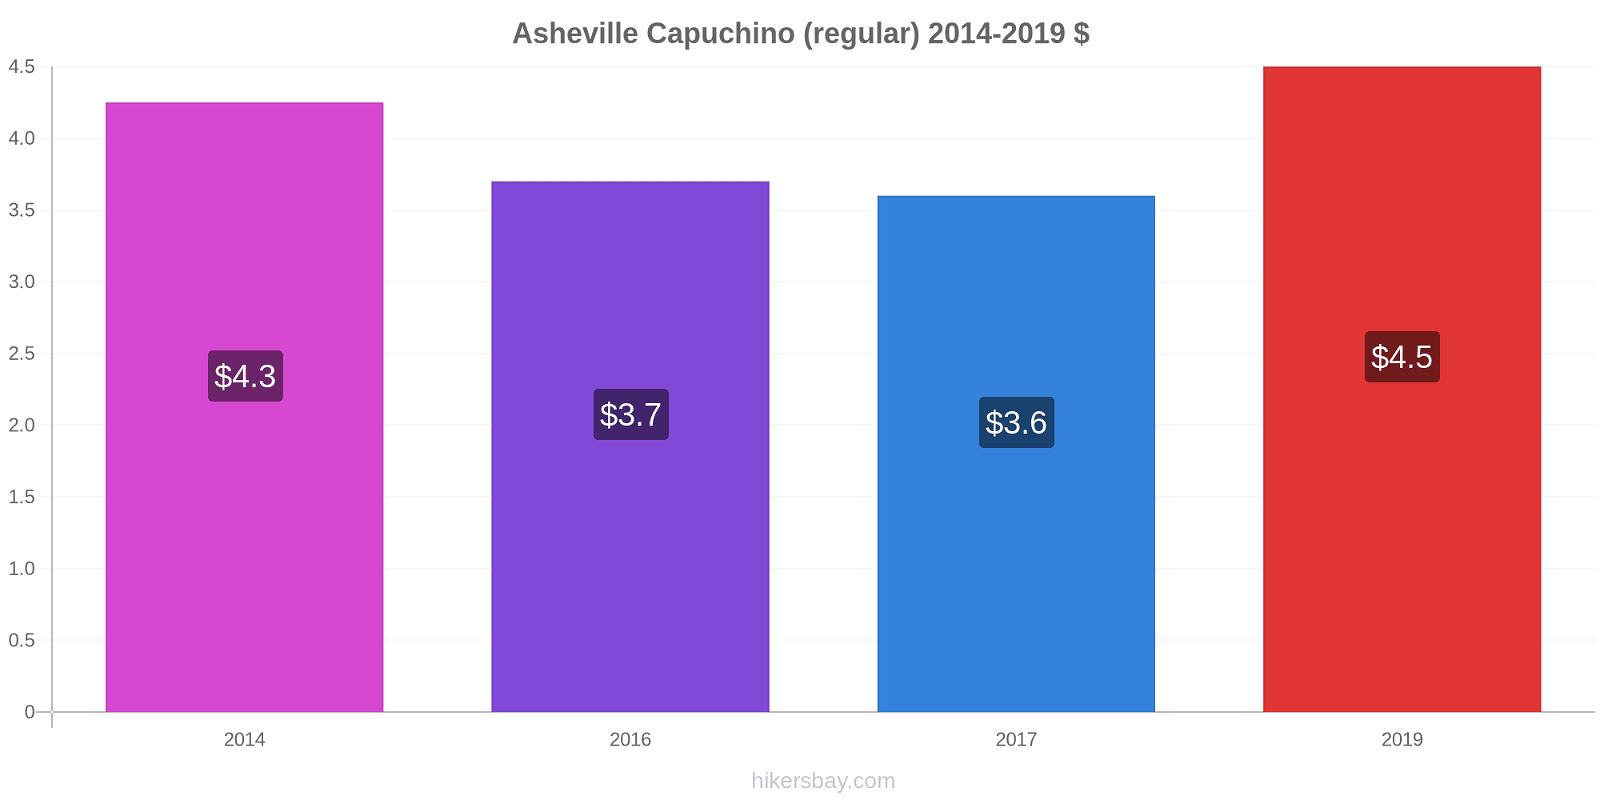 Asheville cambios de precios Capuchino (regular) hikersbay.com